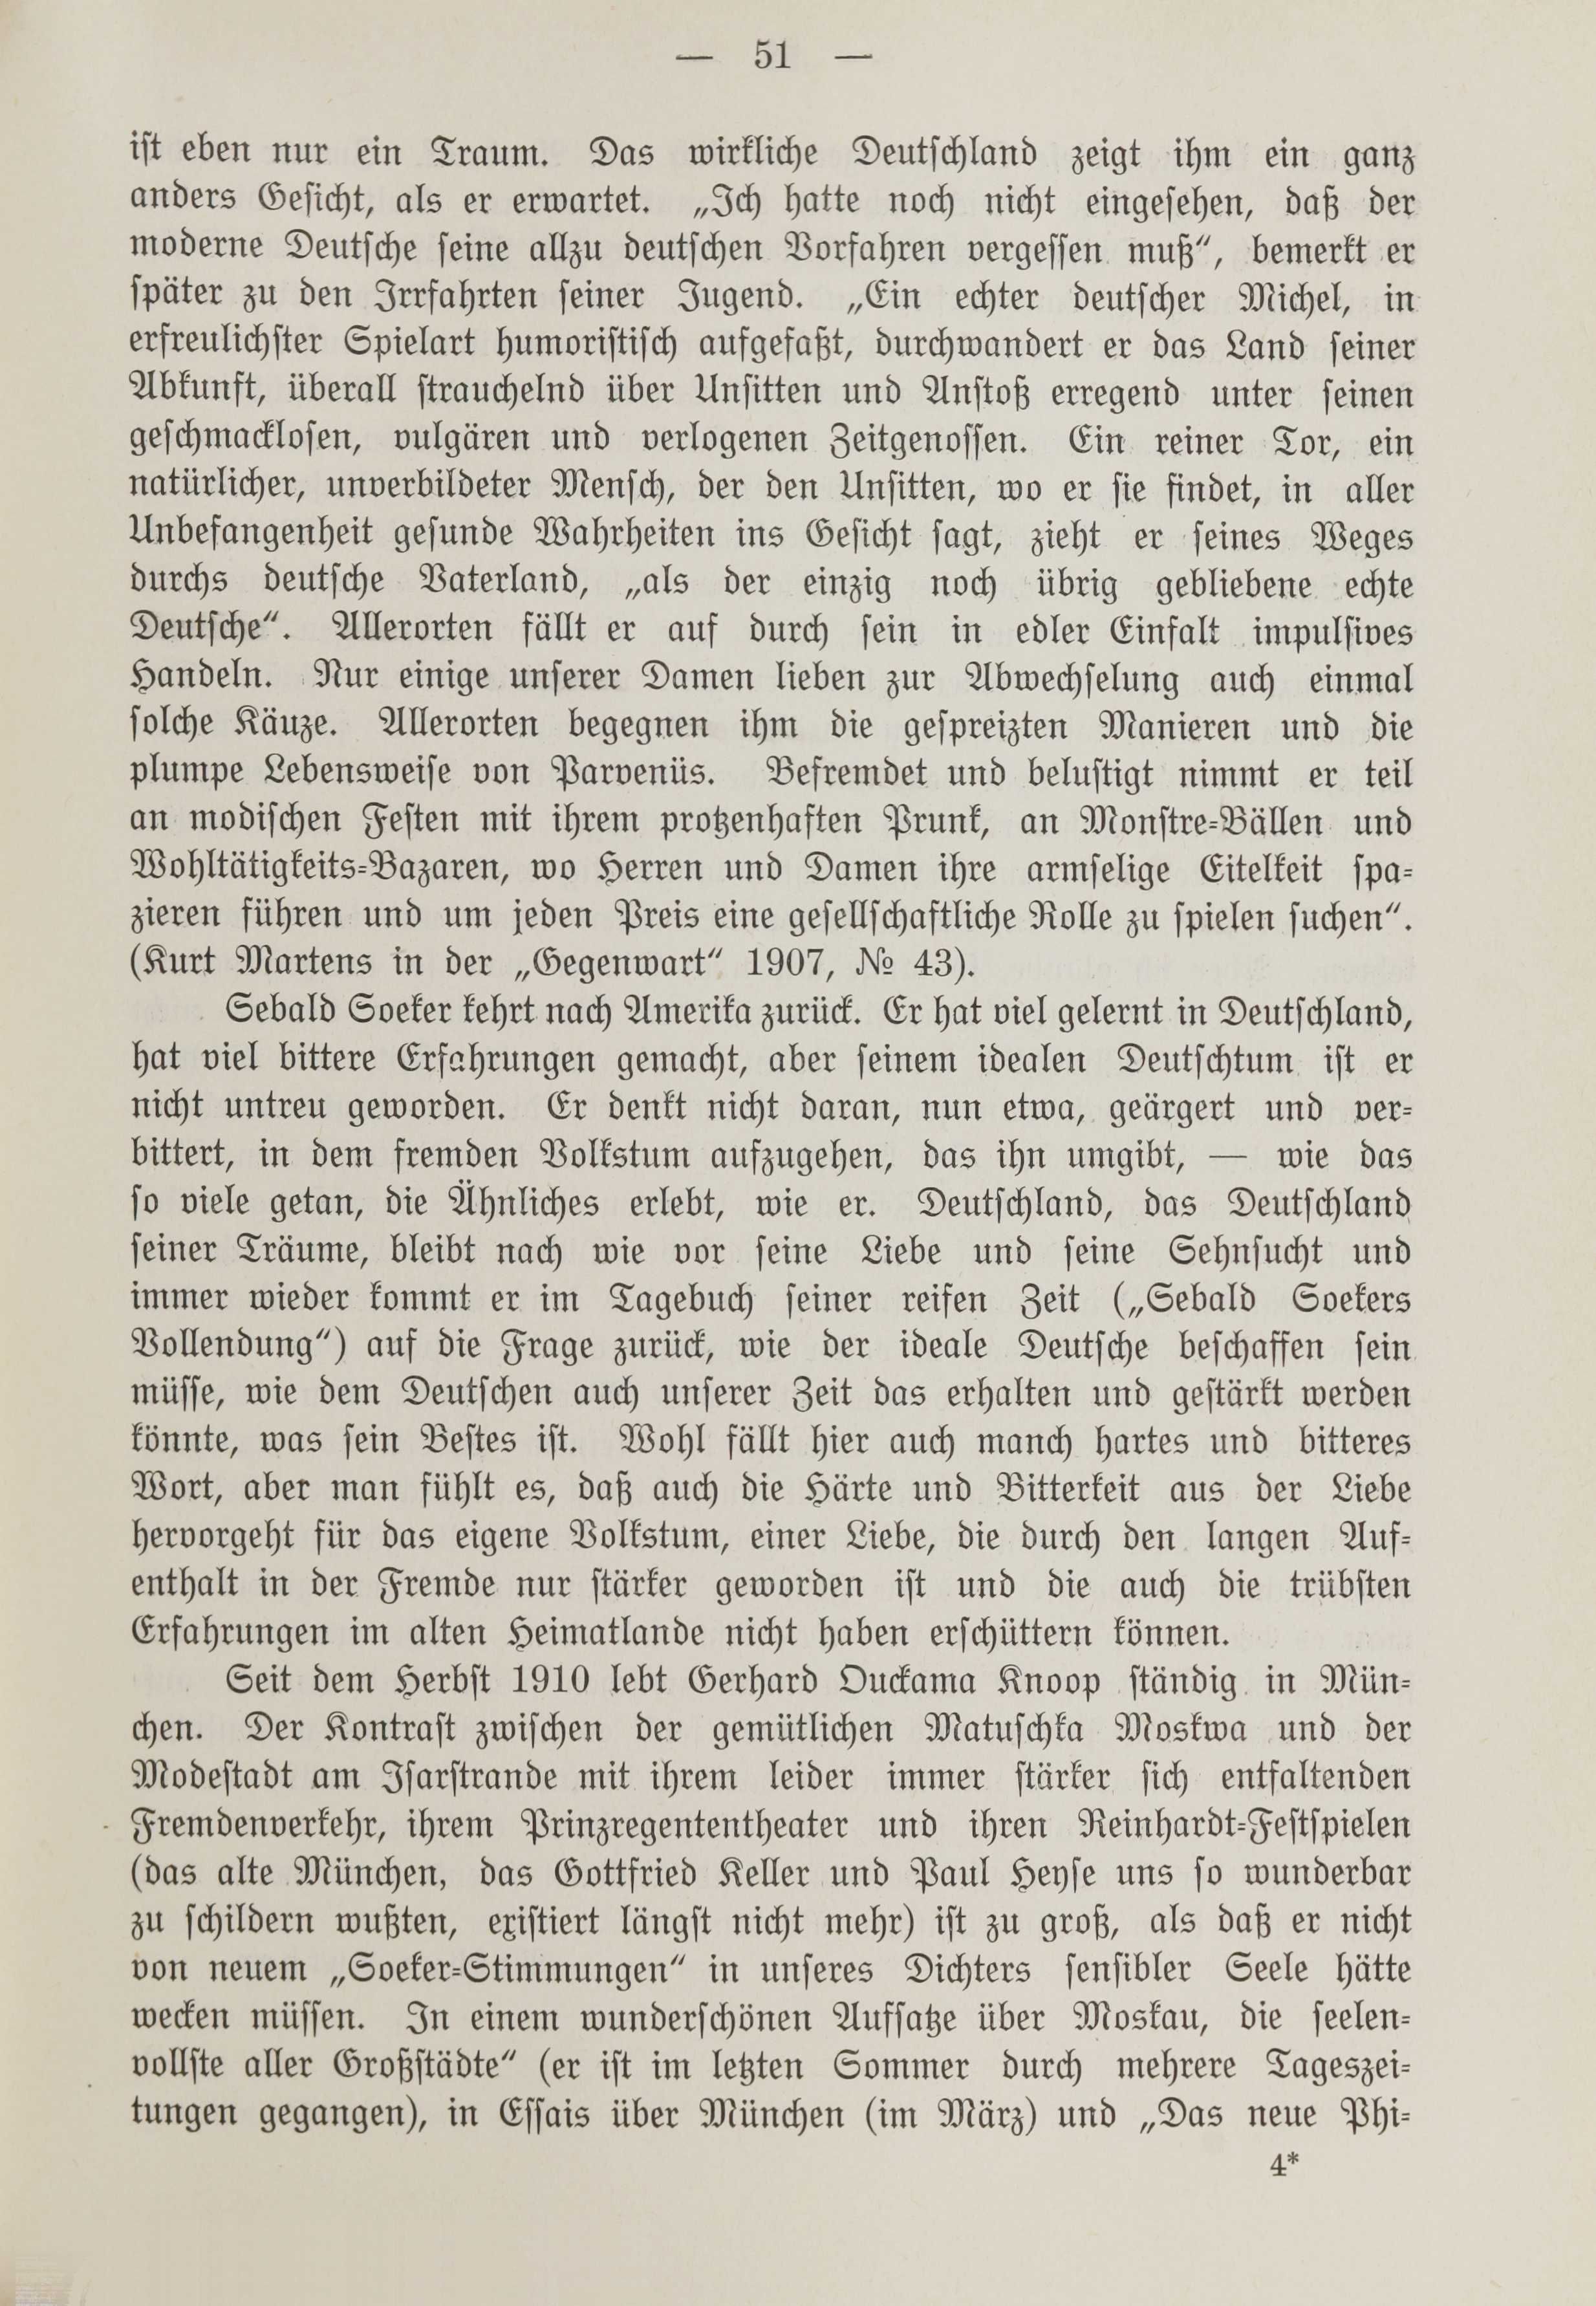 Deutsche Monatsschrift für Russland [1] (1912) | 58. (51) Main body of text